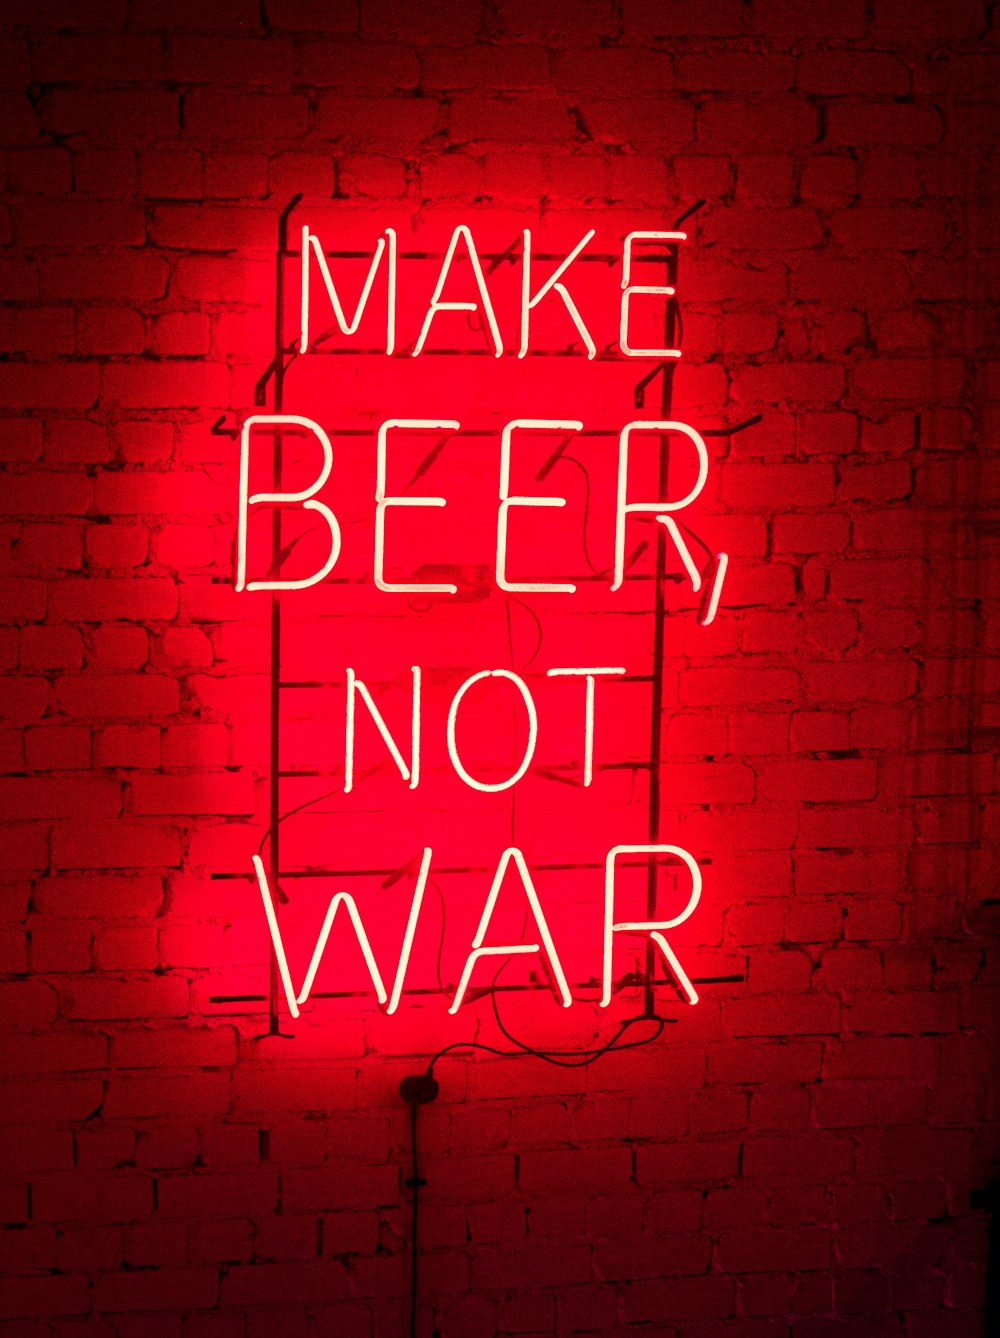 make beer not war neon light signage turned on